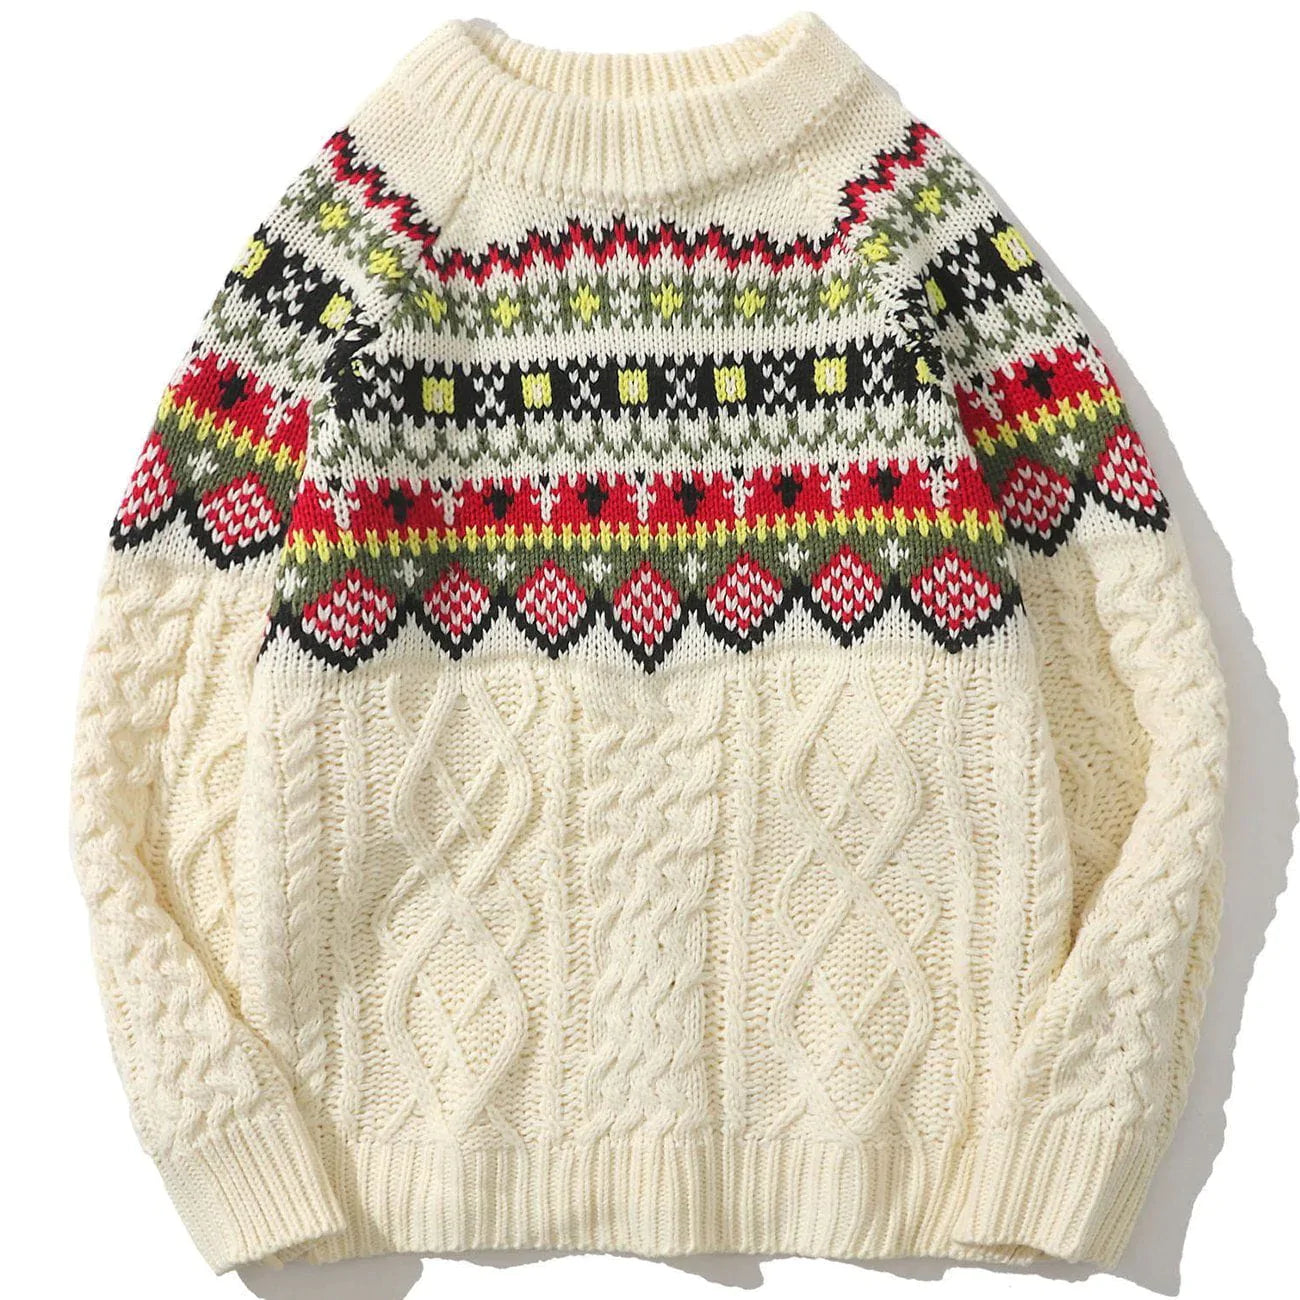 Majesda® - Mosaic Twisted Knit Sweater outfit ideas streetwear fashion